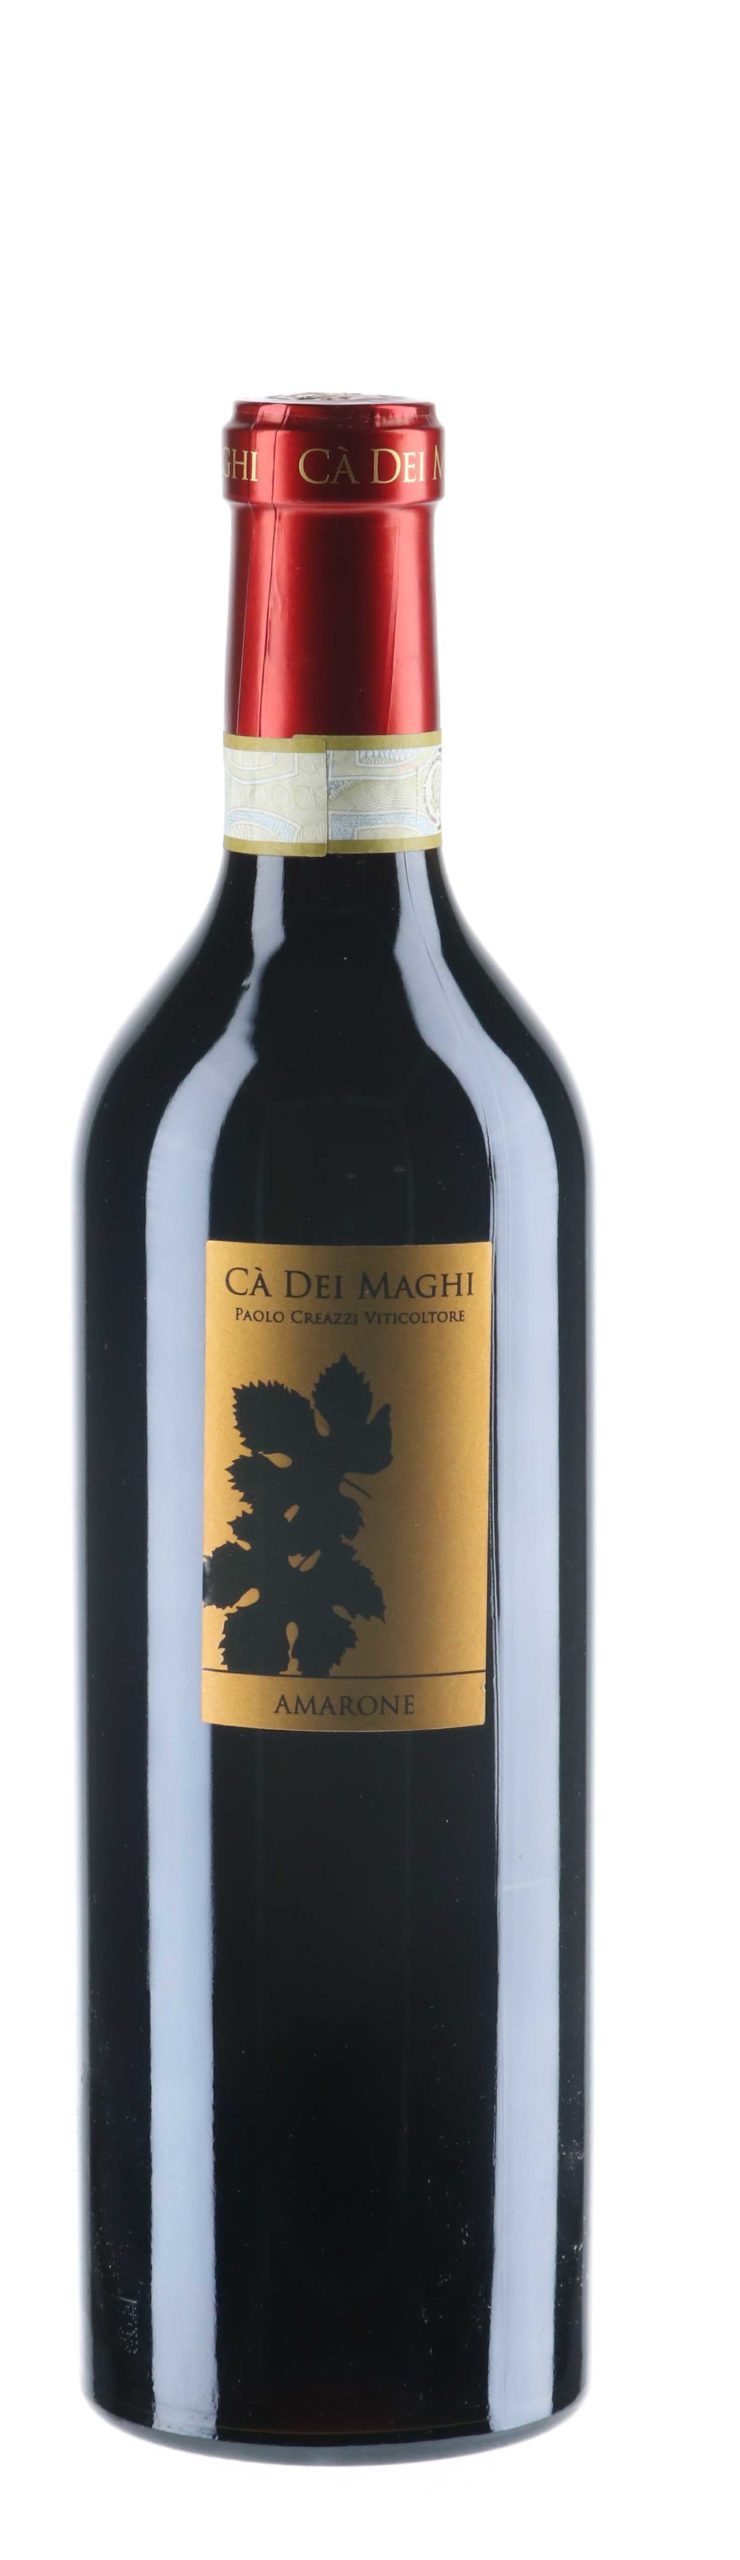 Cà Dei Maghi – Canova 2013 – Amarone della Valpolicella Classico Riserva